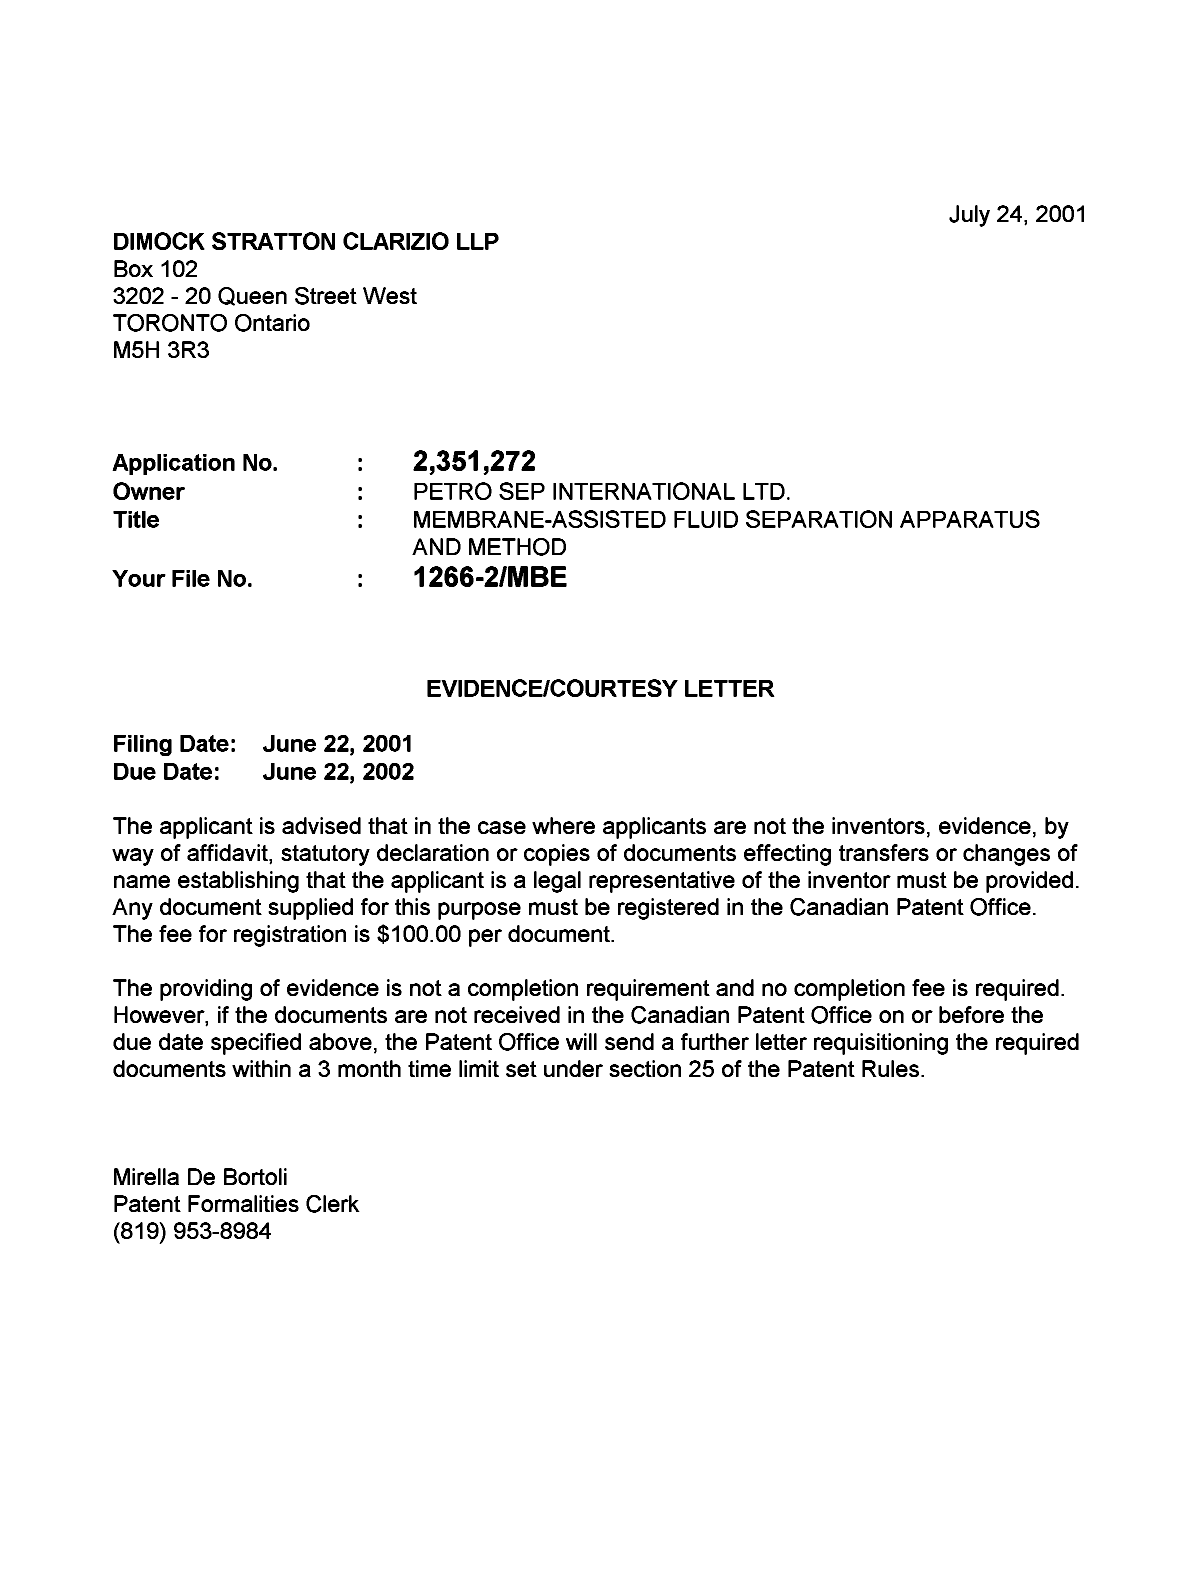 Document de brevet canadien 2351272. Correspondance 20010719. Image 1 de 1